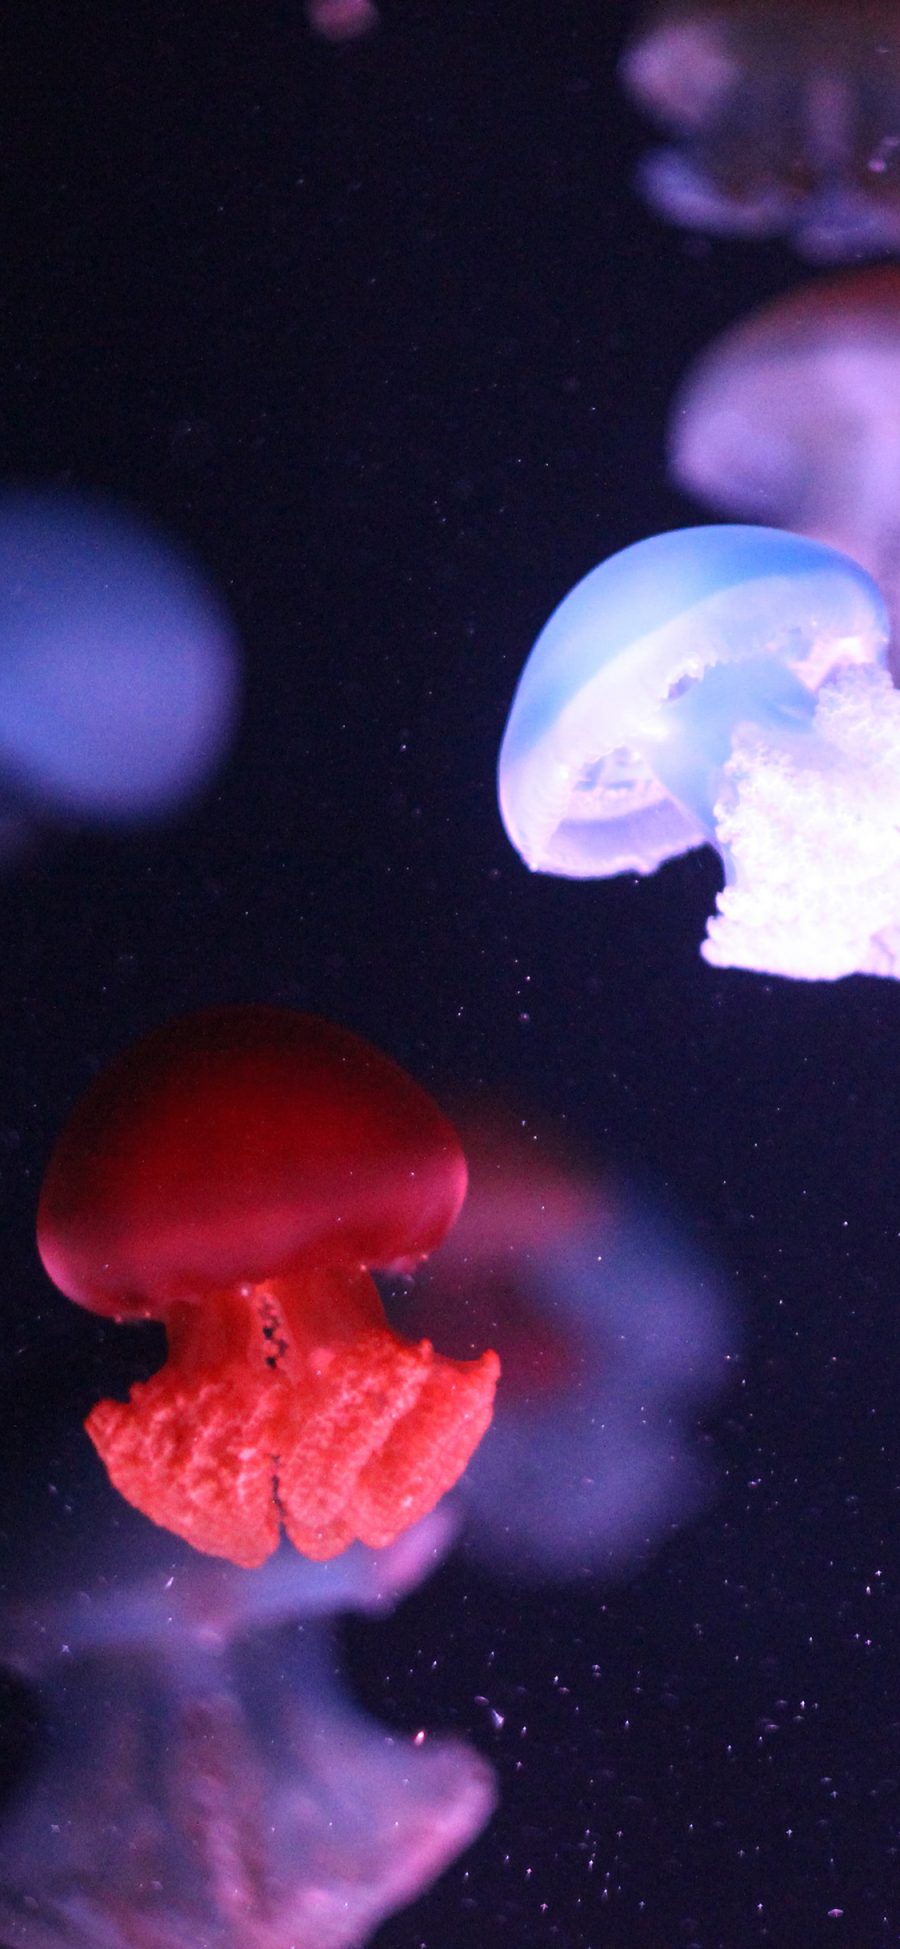 [2436×1125]海洋生物 水母 海蜇 浮游 苹果手机壁纸图片